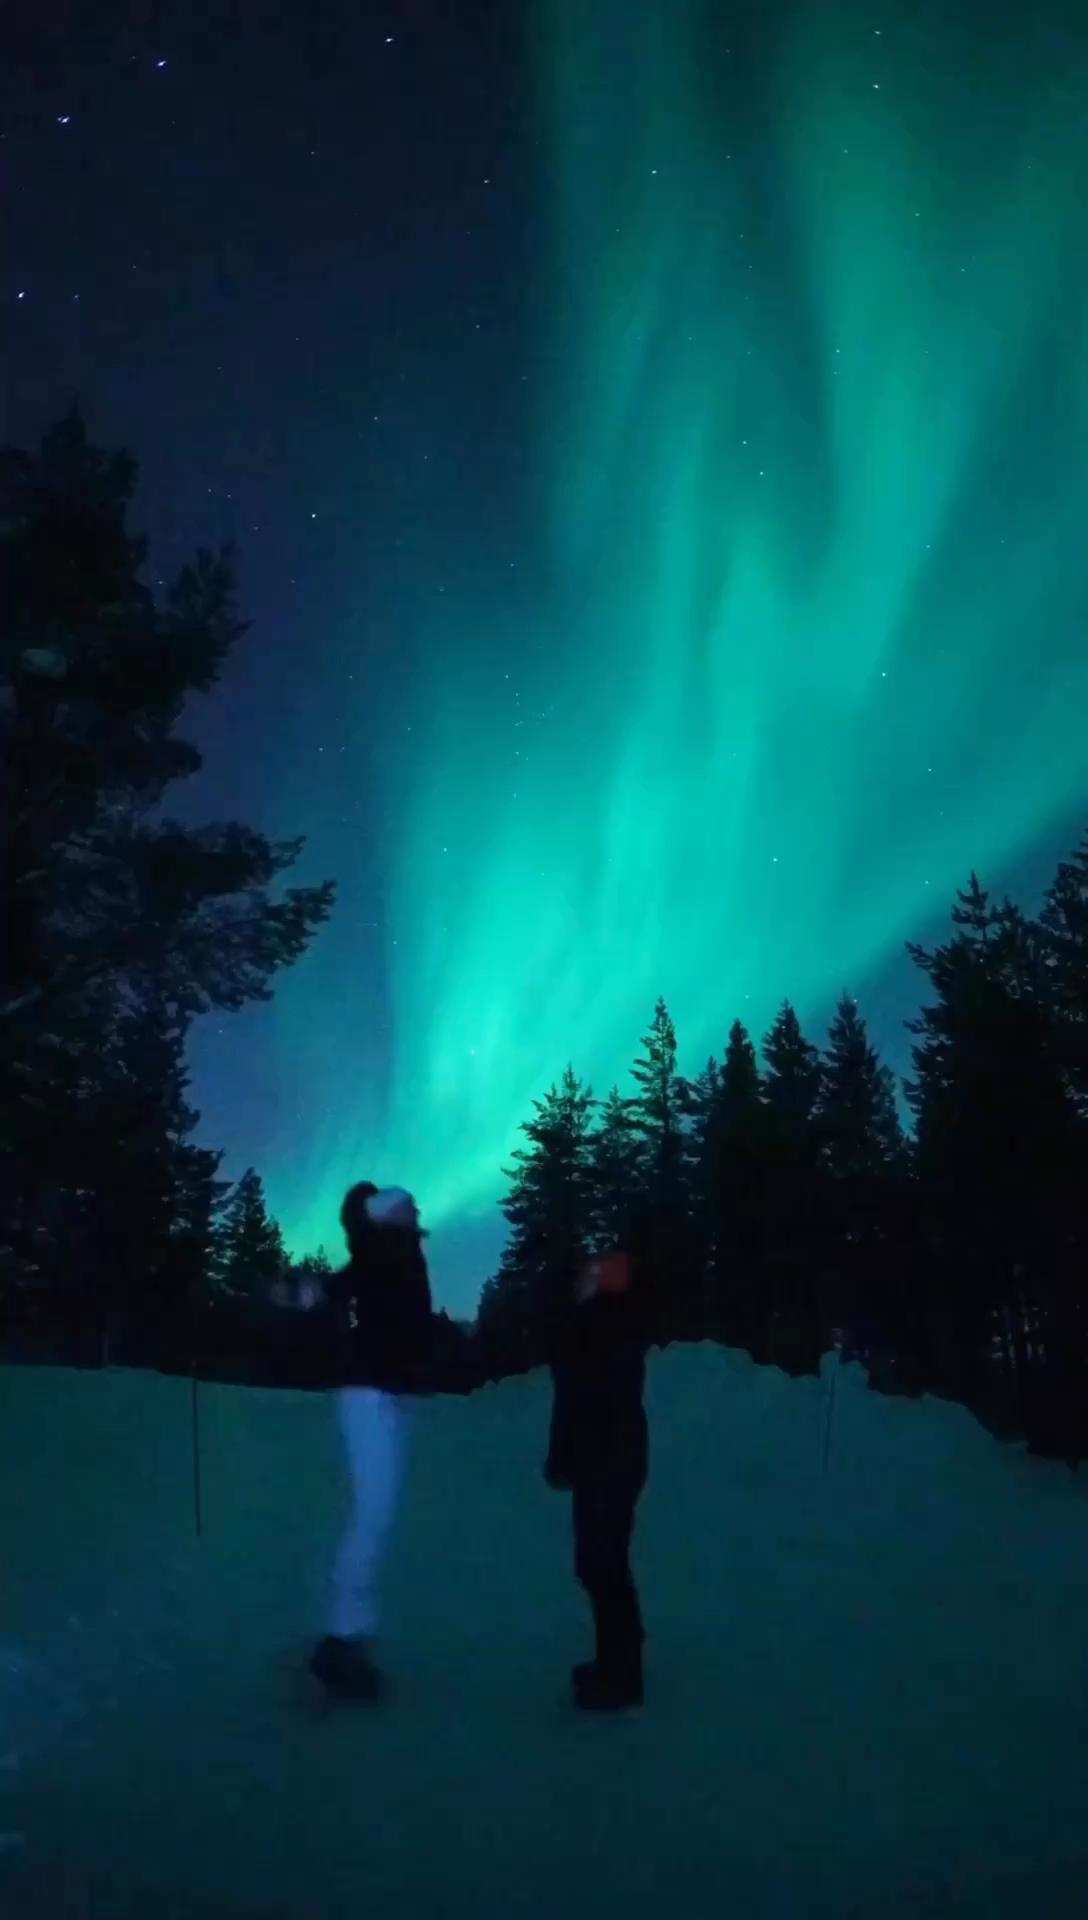 当你计划挪威的极光之旅时，以下是一份详细攻略： **1. 季节和时间：** 极光最活跃的季节是在冬季